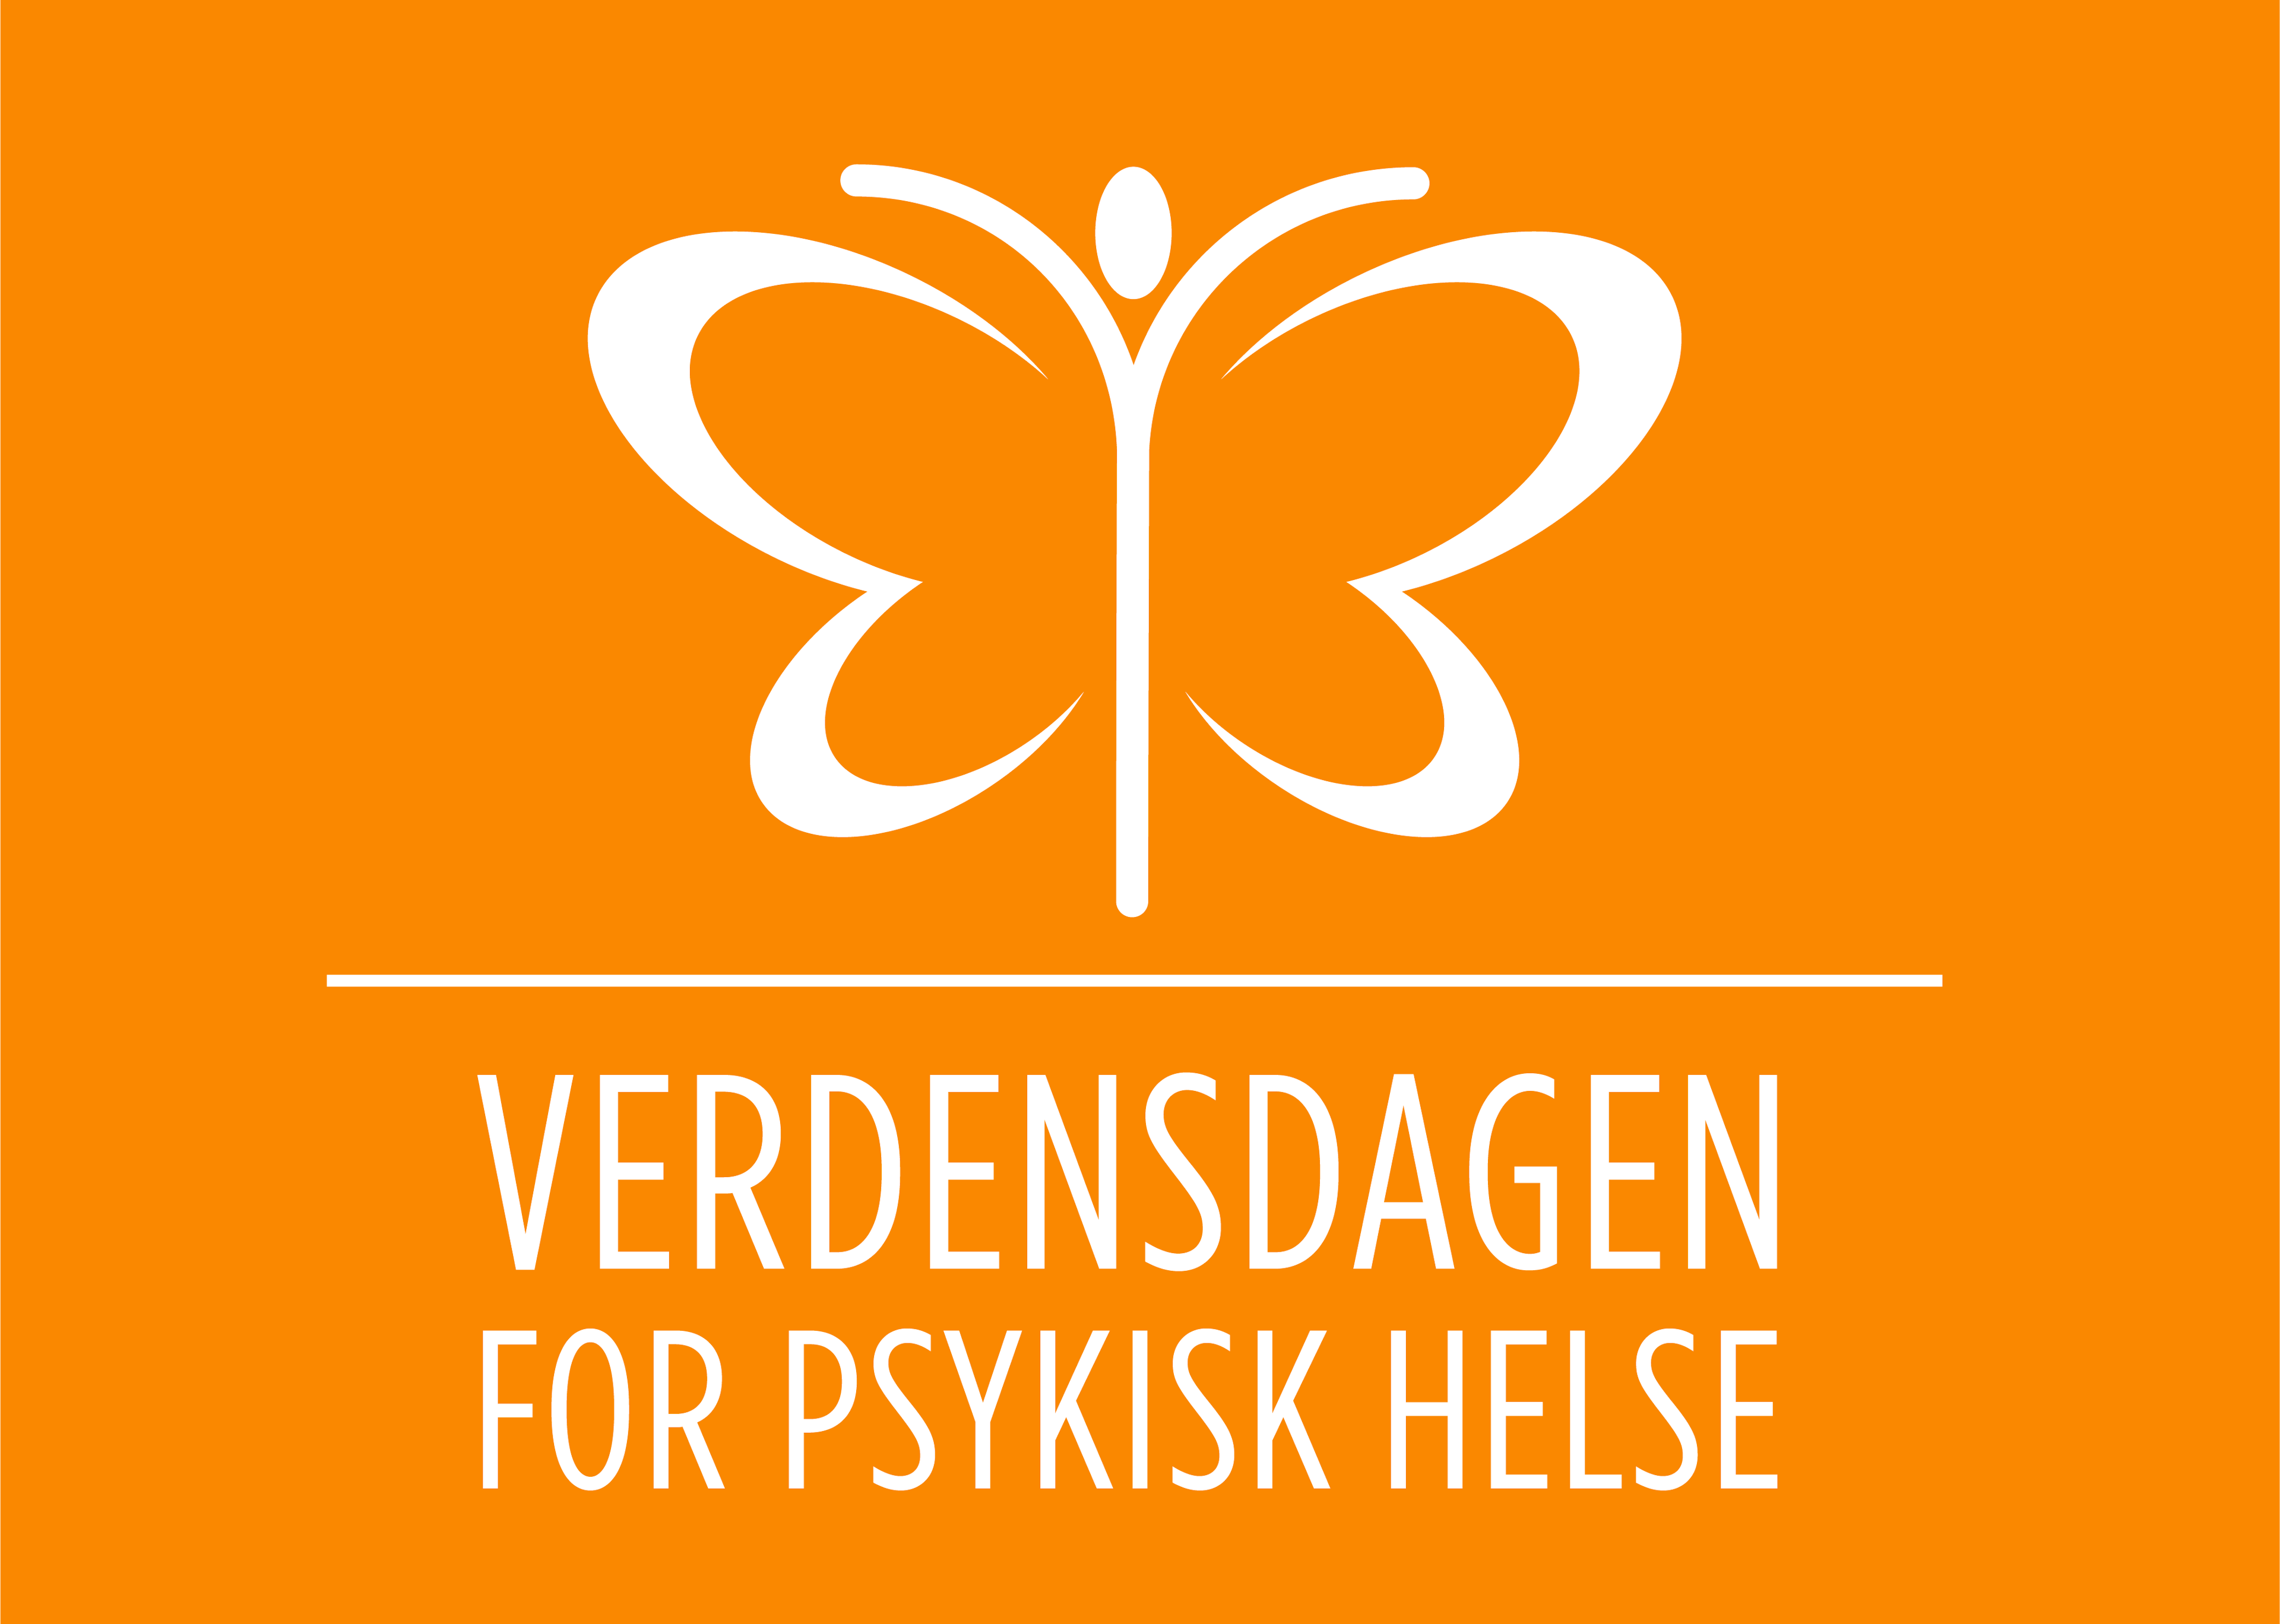 Verdensdagen for psykisk helse logo